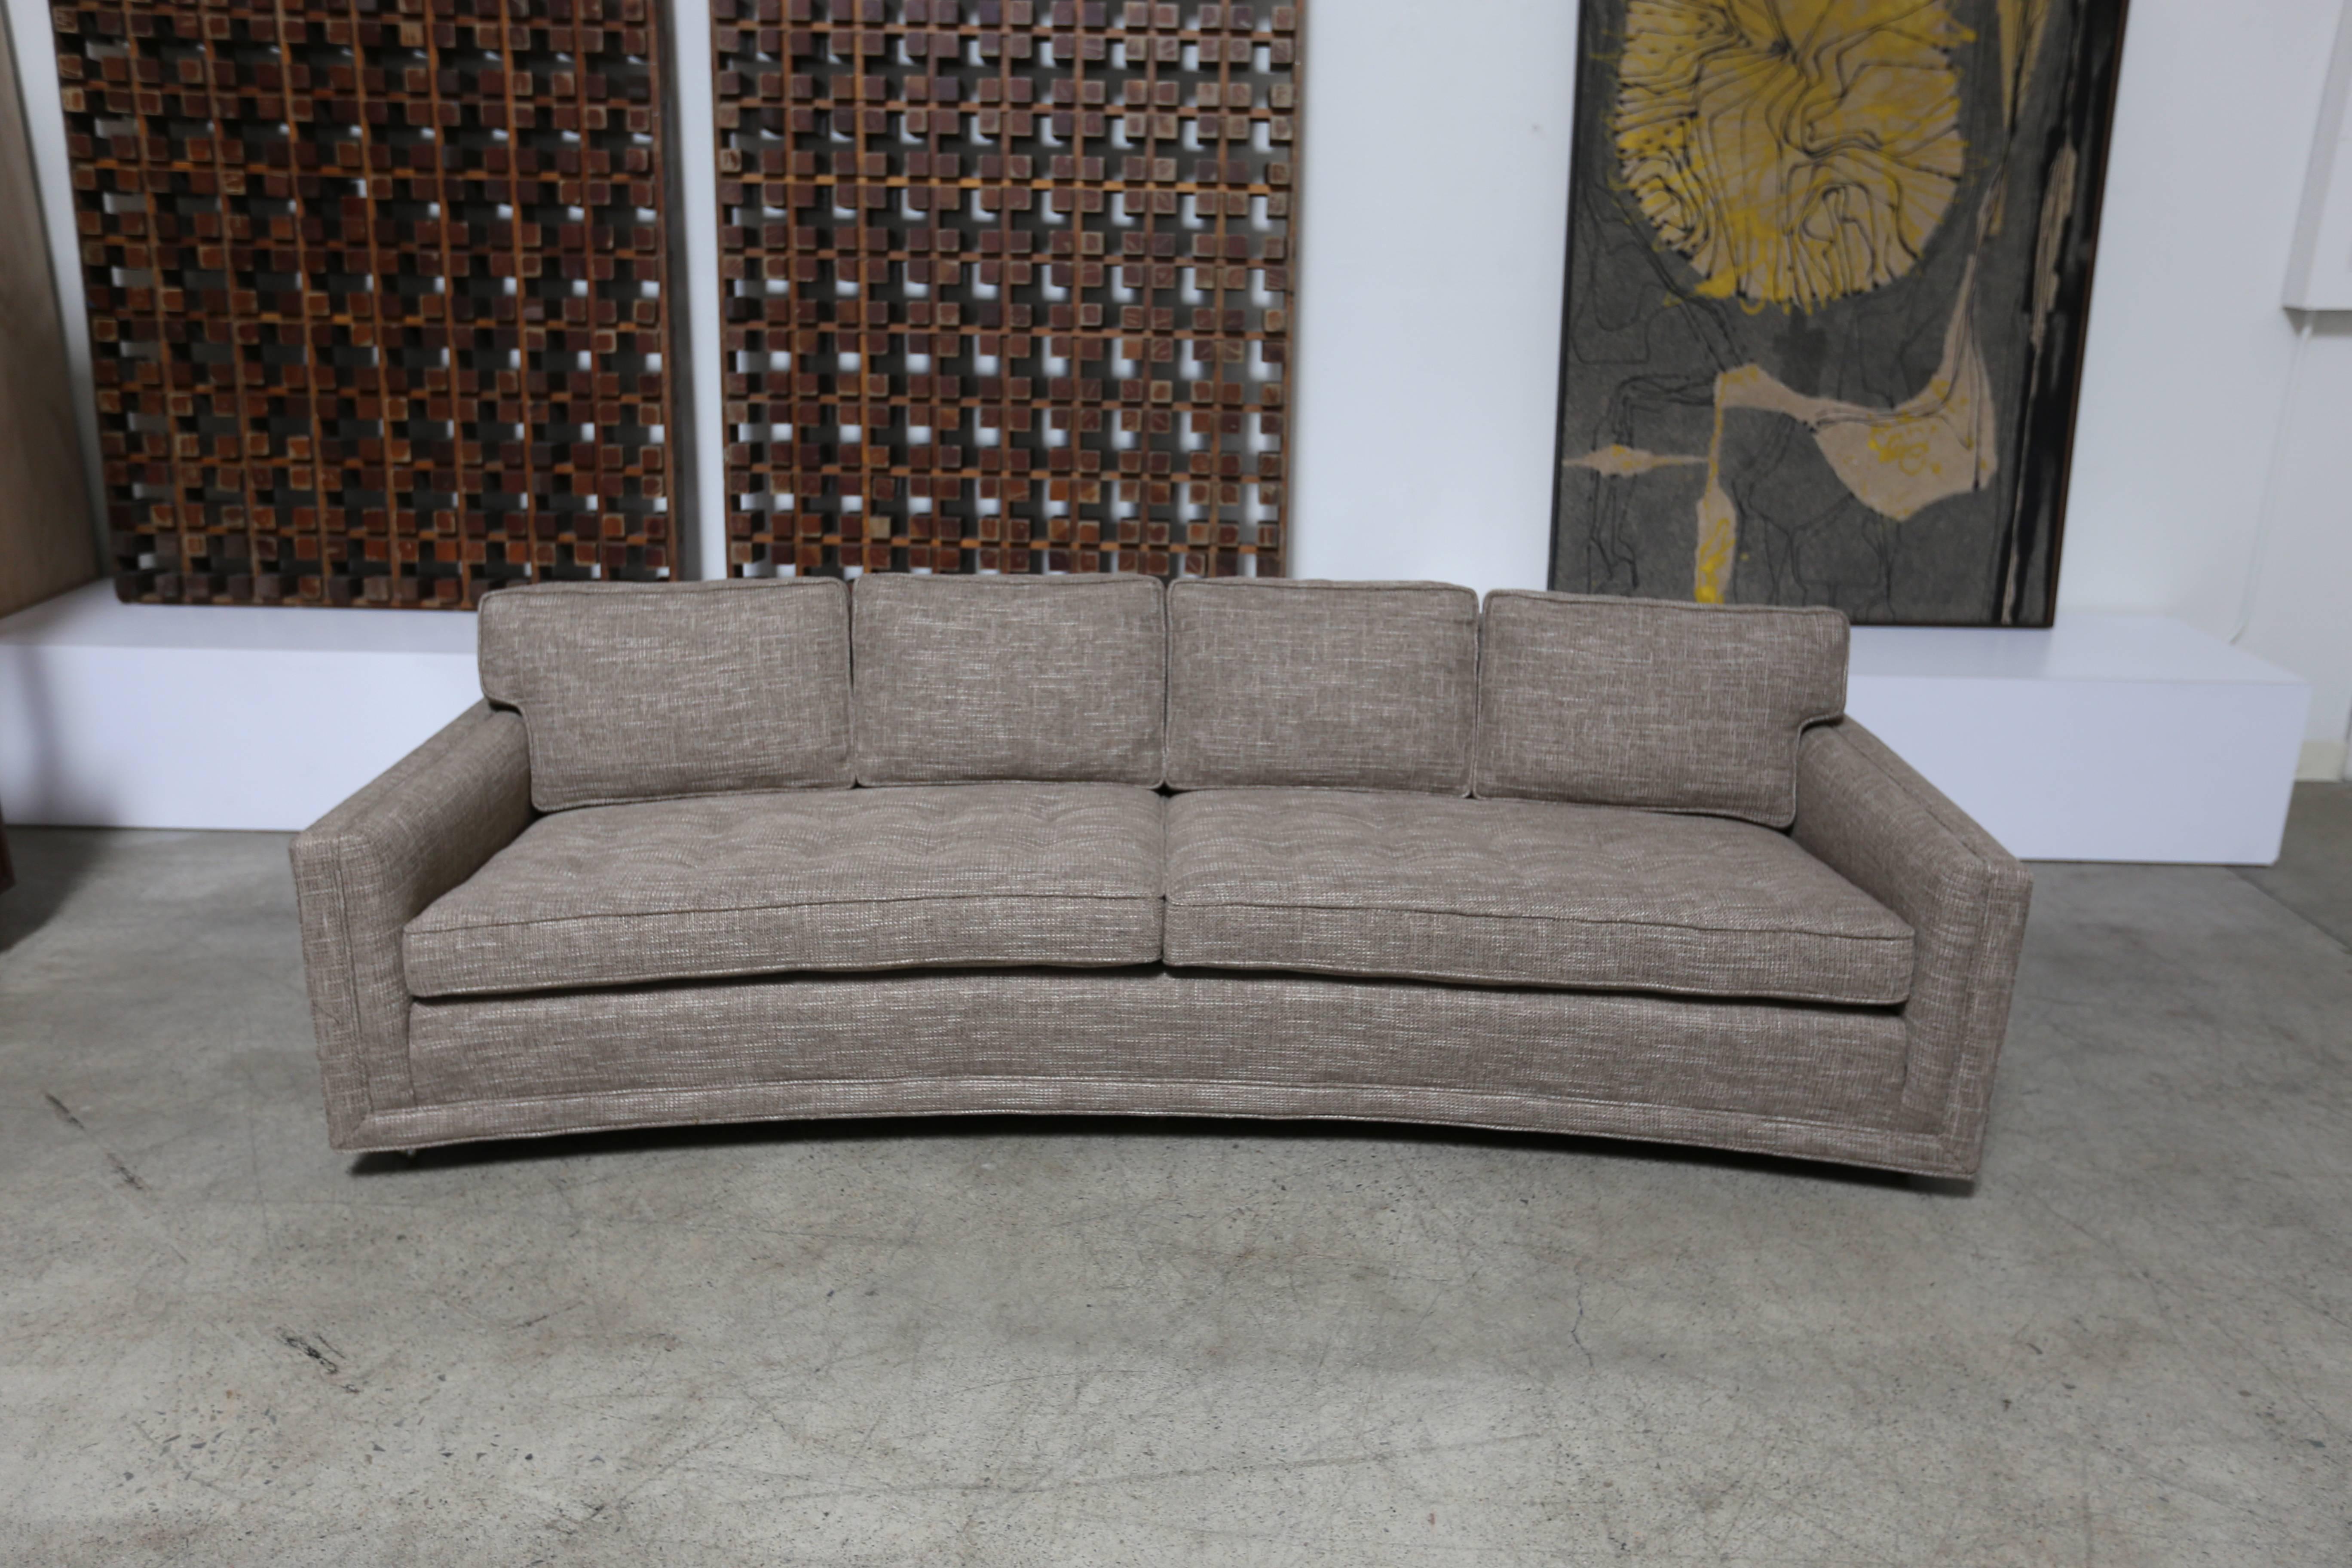 Curved sofa by Edward Wormley for Dunbar.